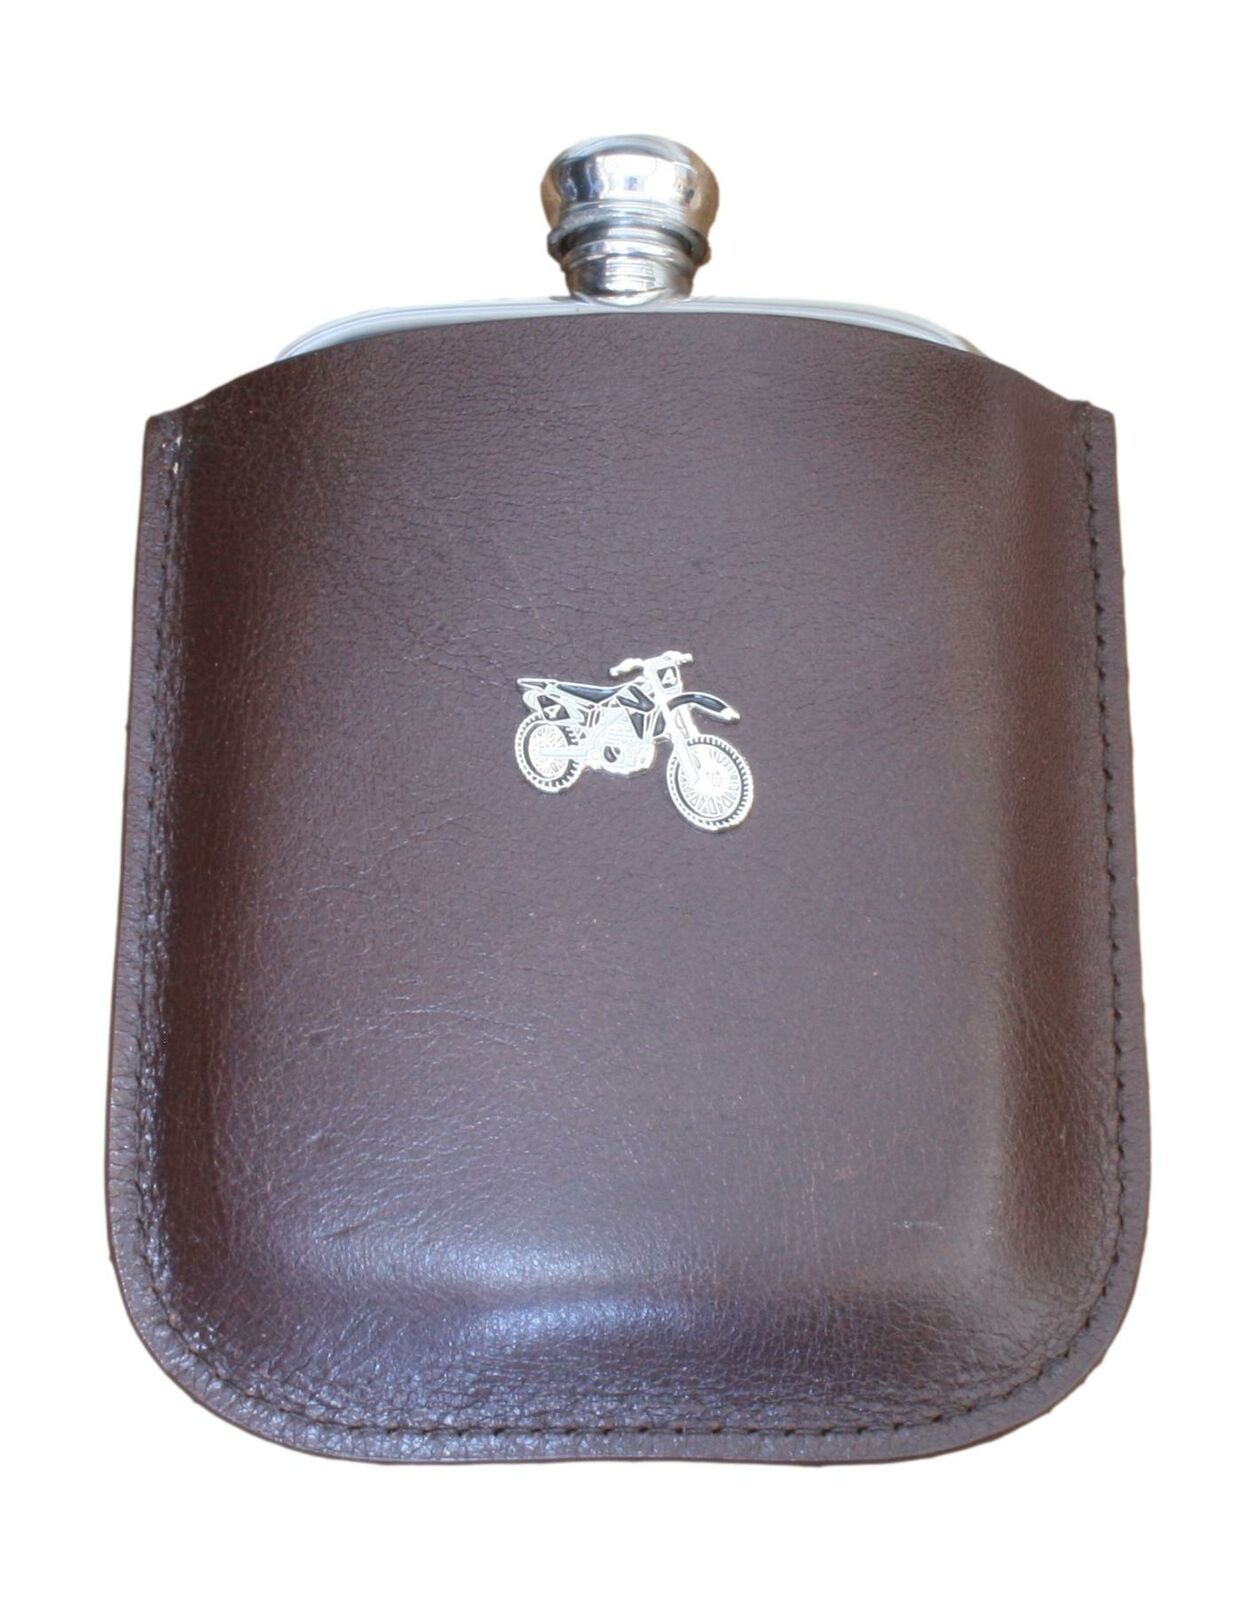 Scrambler Pewter 4 Oz Hip Flask Brown Leather Pouch Personalised 545 Najniższa cena wyzwanie